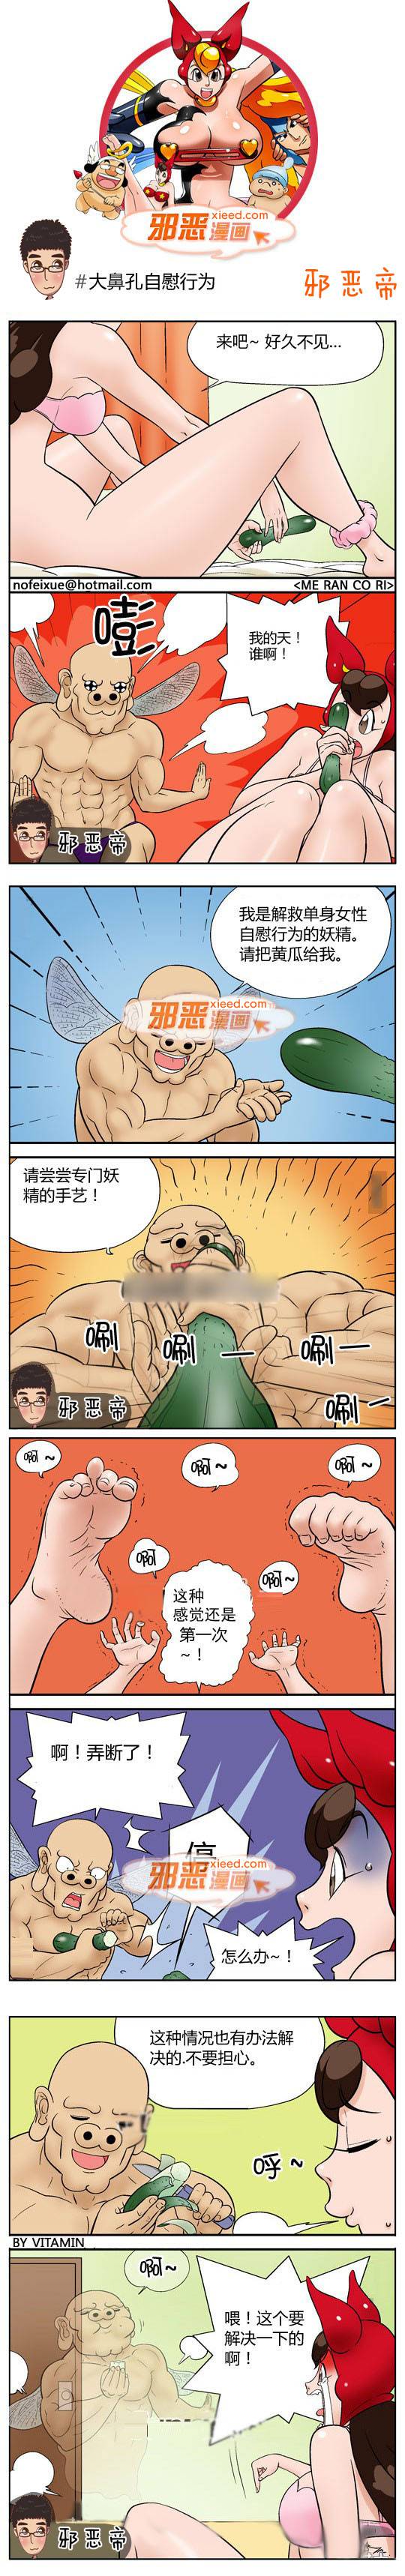 邪恶漫画爆笑囧图第328刊：妻子的欲望